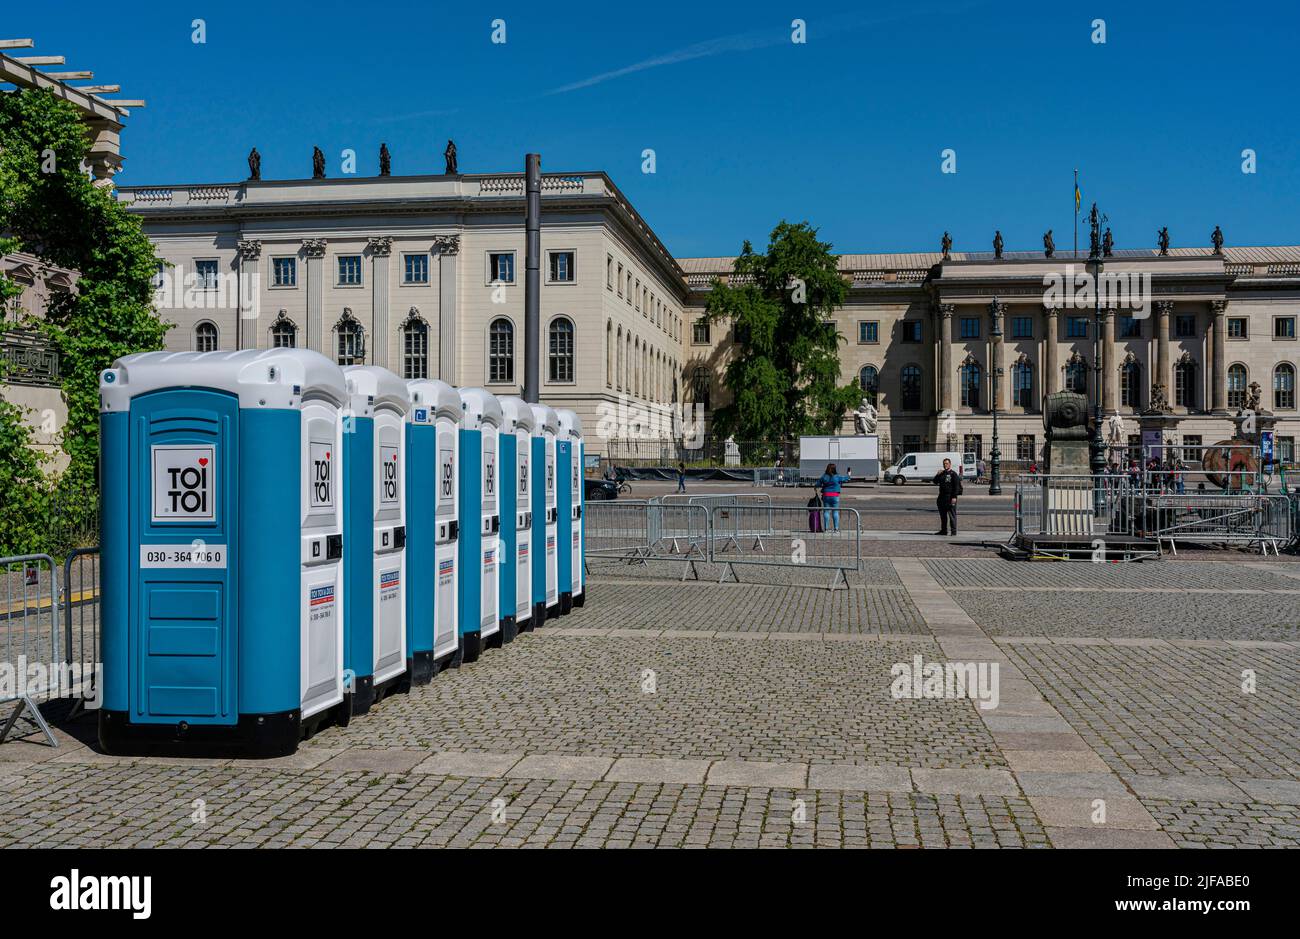 Mobile TOI TOI toilet cubicles, Bebel-Platz, Unter den Linden, Berlin, Germany Stock Photo